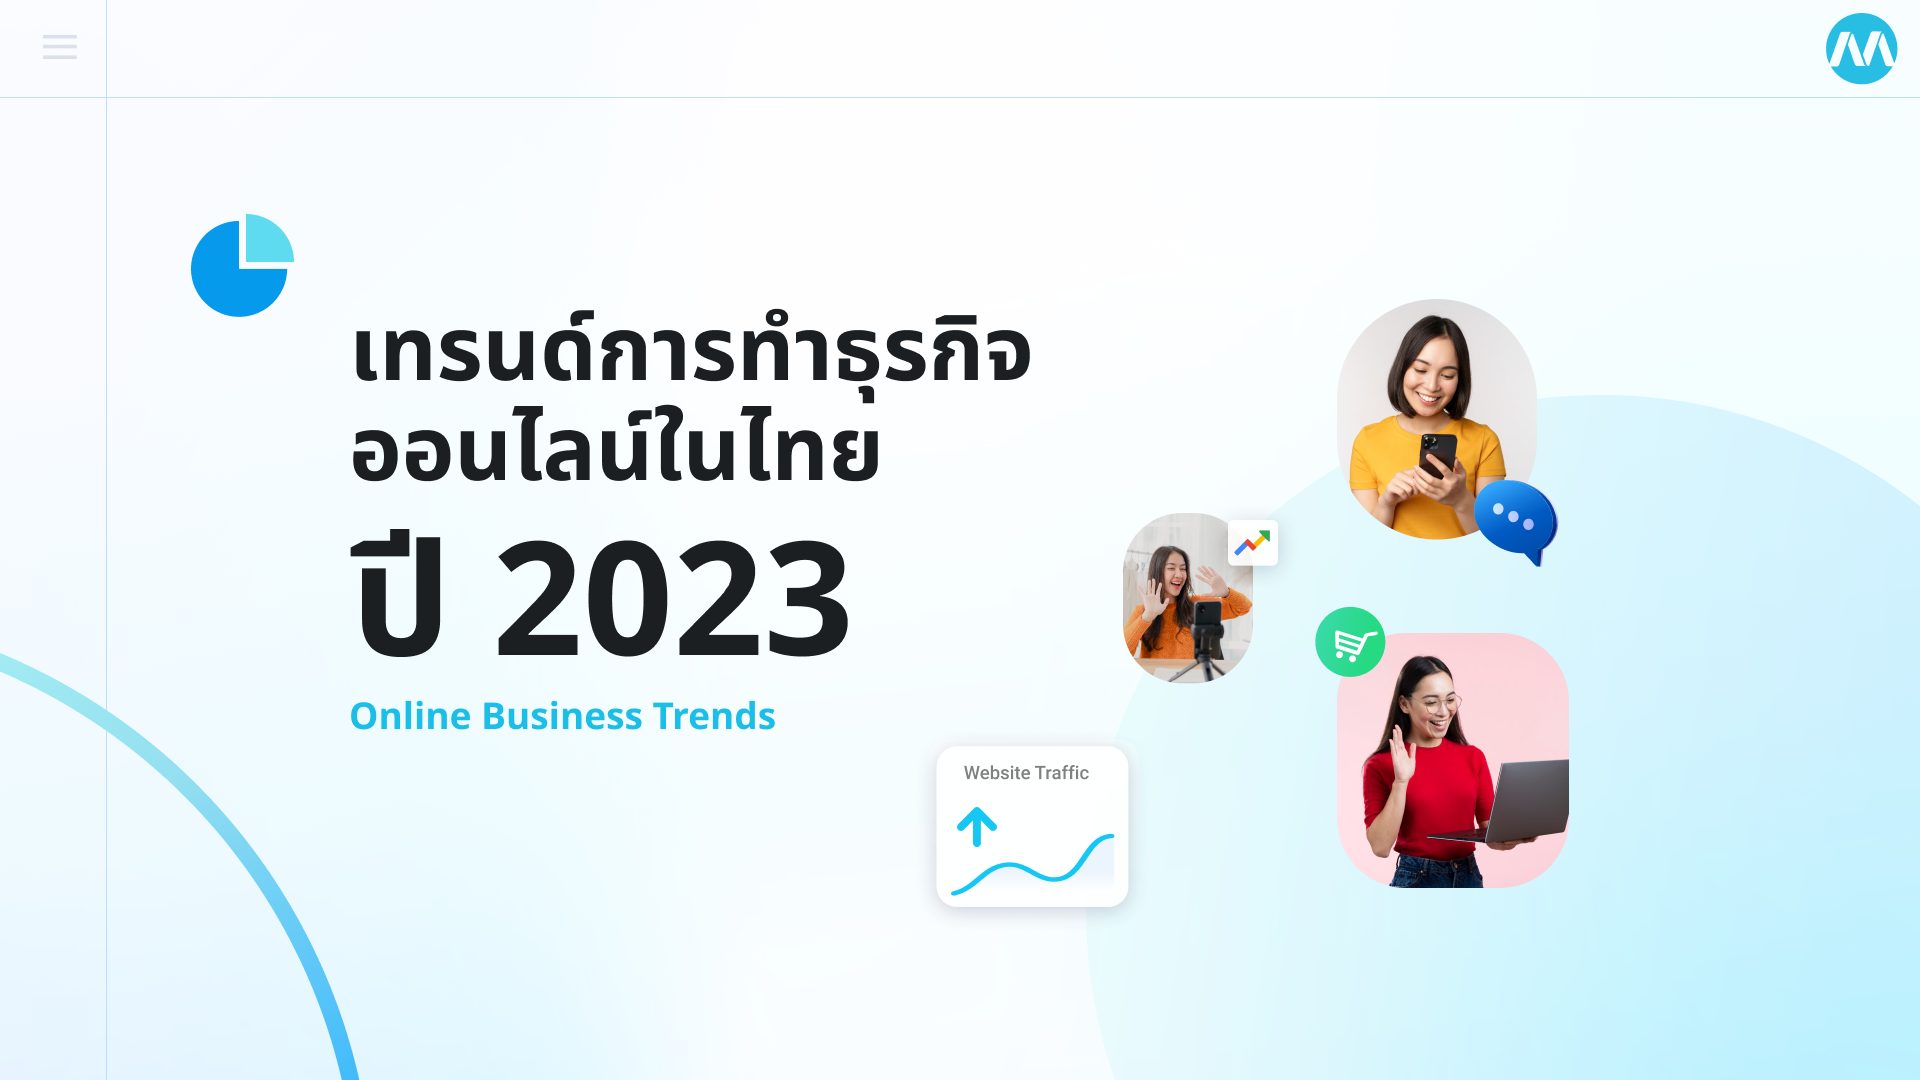 เทรนด์การทำธุรกิจออนไลน์ในไทยปี 2023